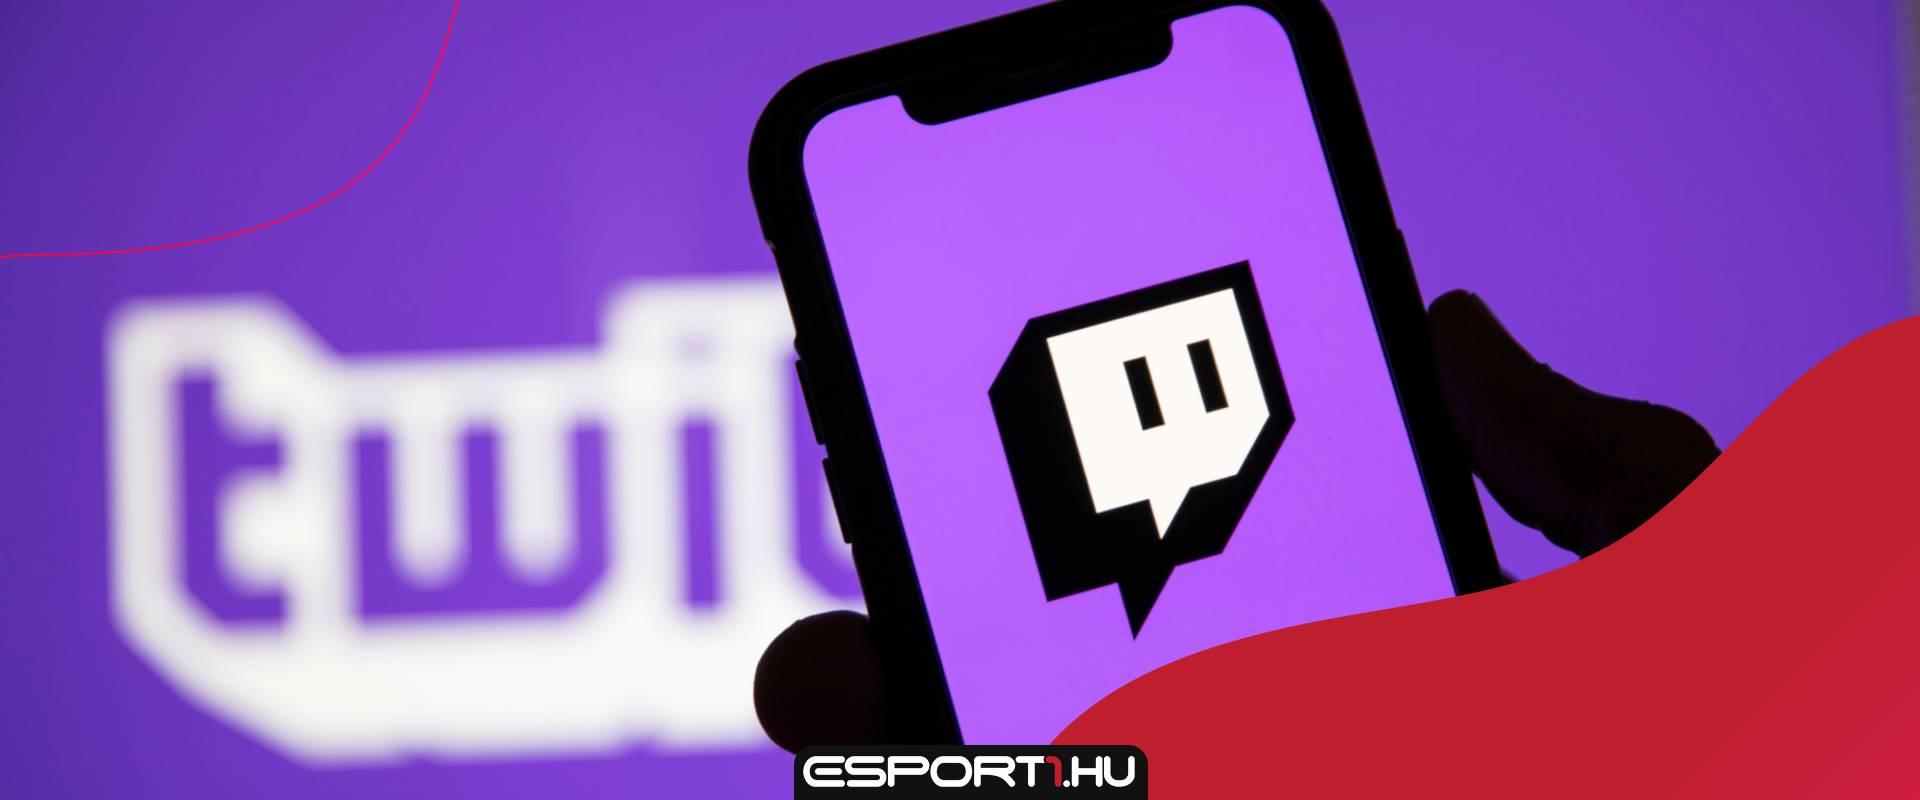 Egyetlen streamer miatt betiltották a Twitch-et Szlovákiában